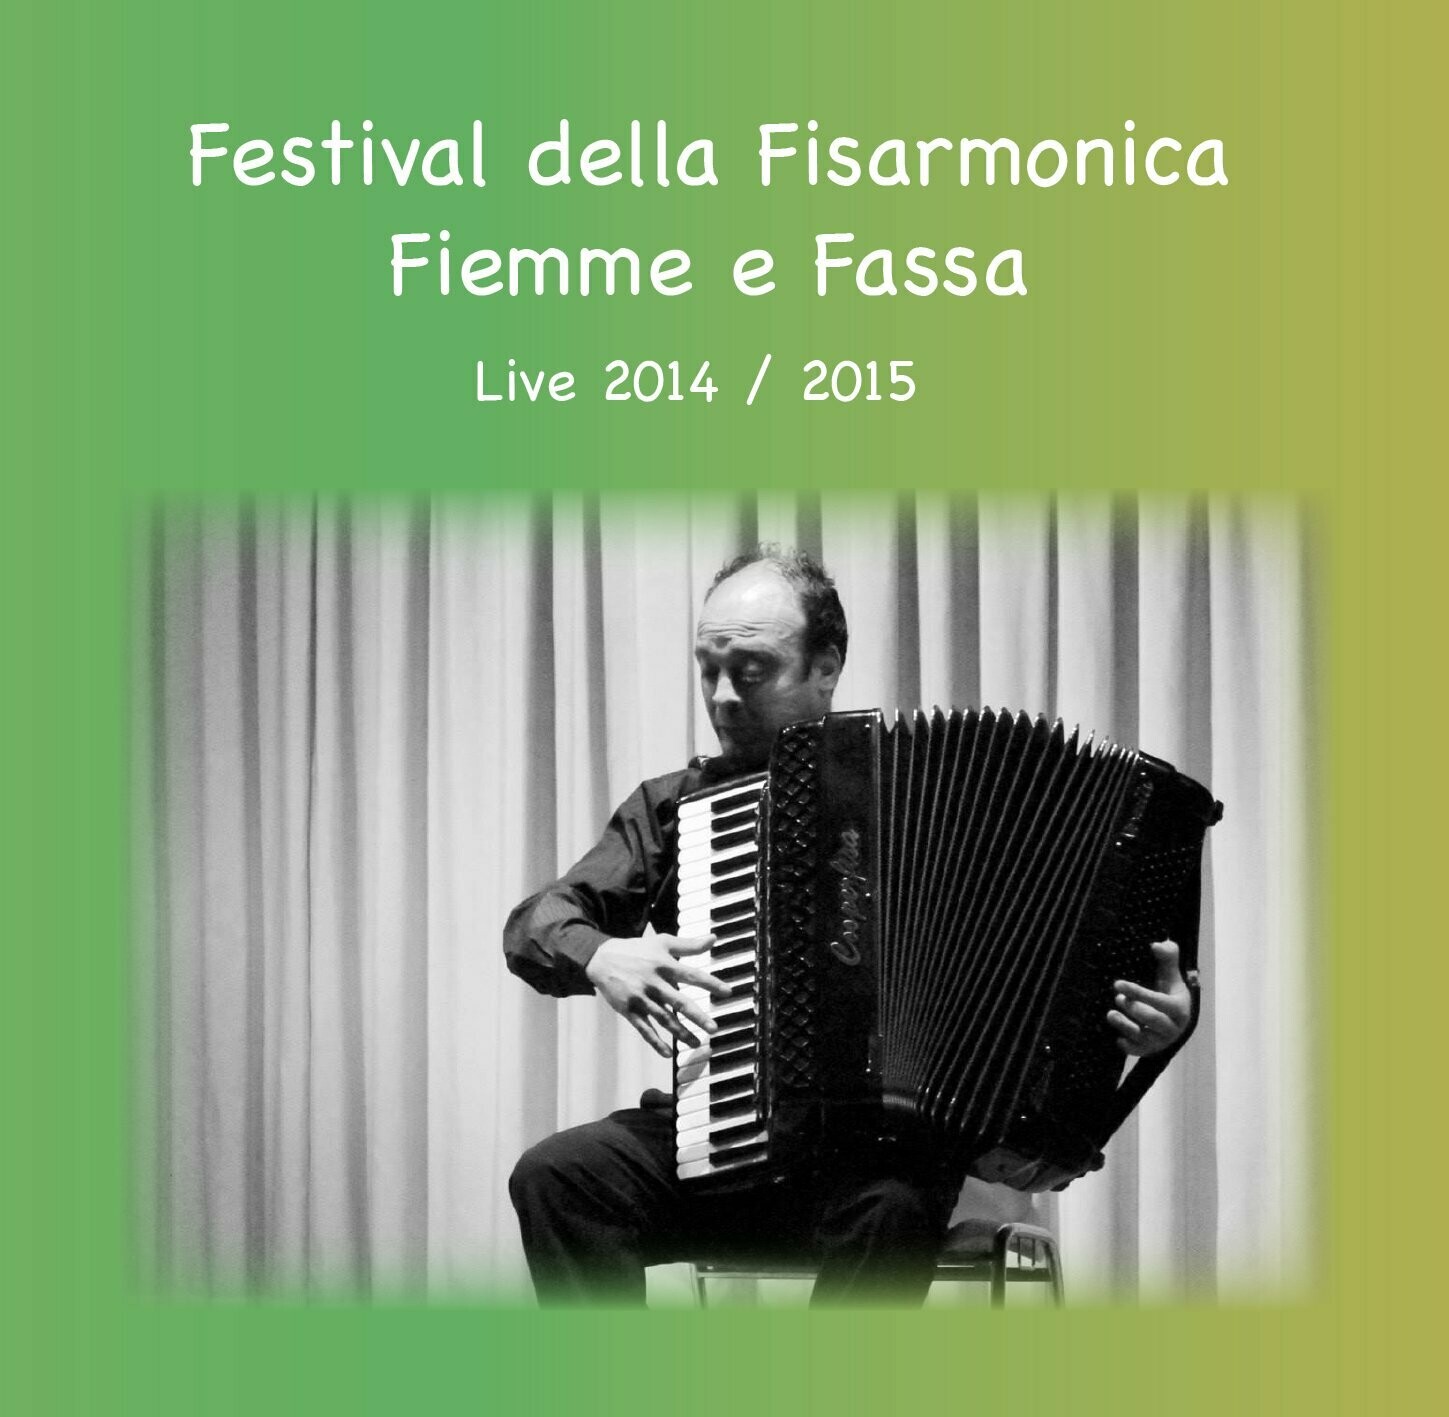 Festival della Fisarmonica Fiemme e Fassa